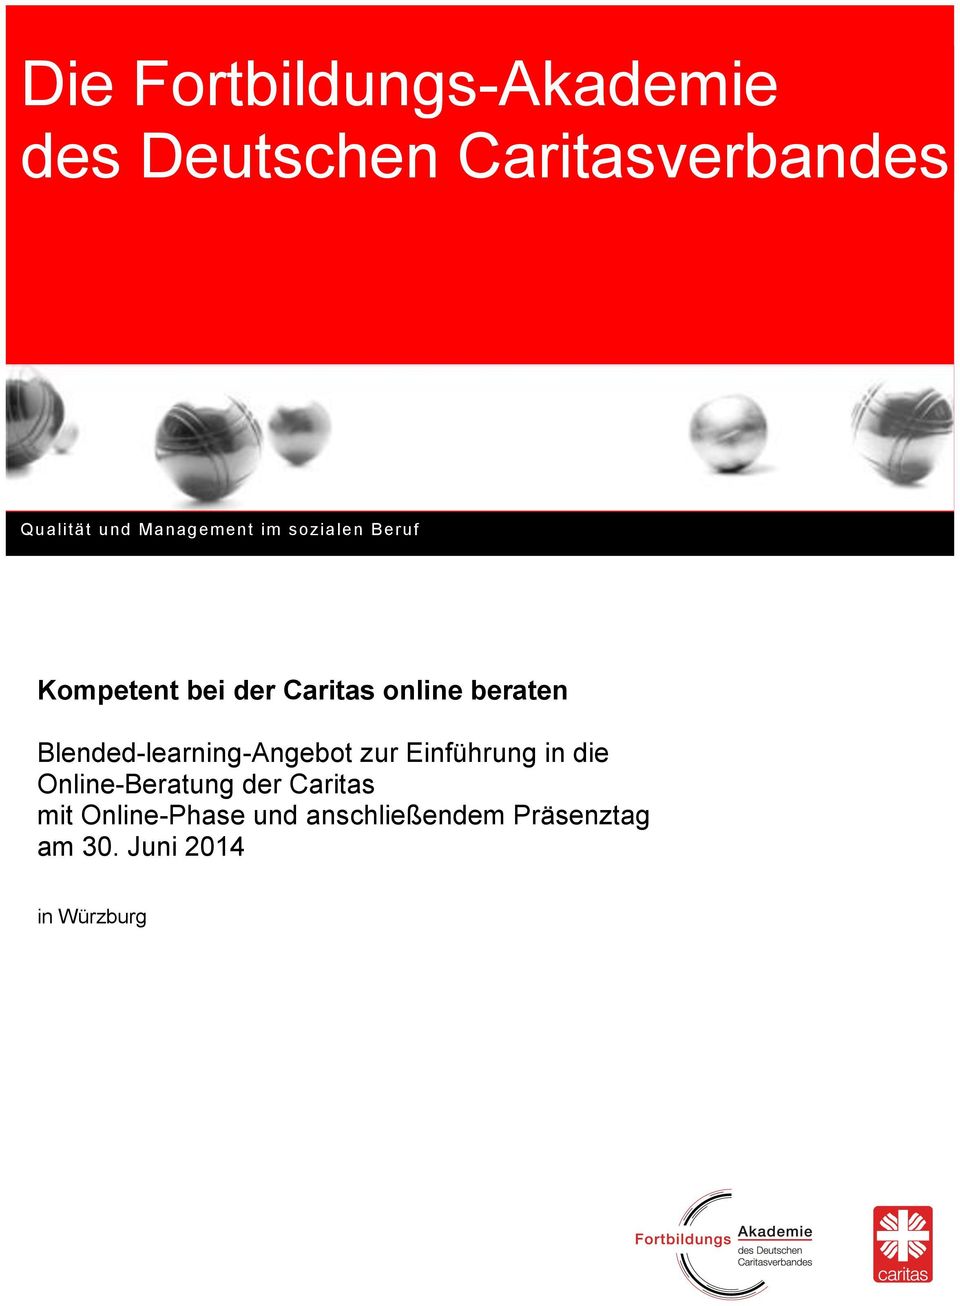 Blended-learning-Angebot zur Einführung in die Online-Beratung der